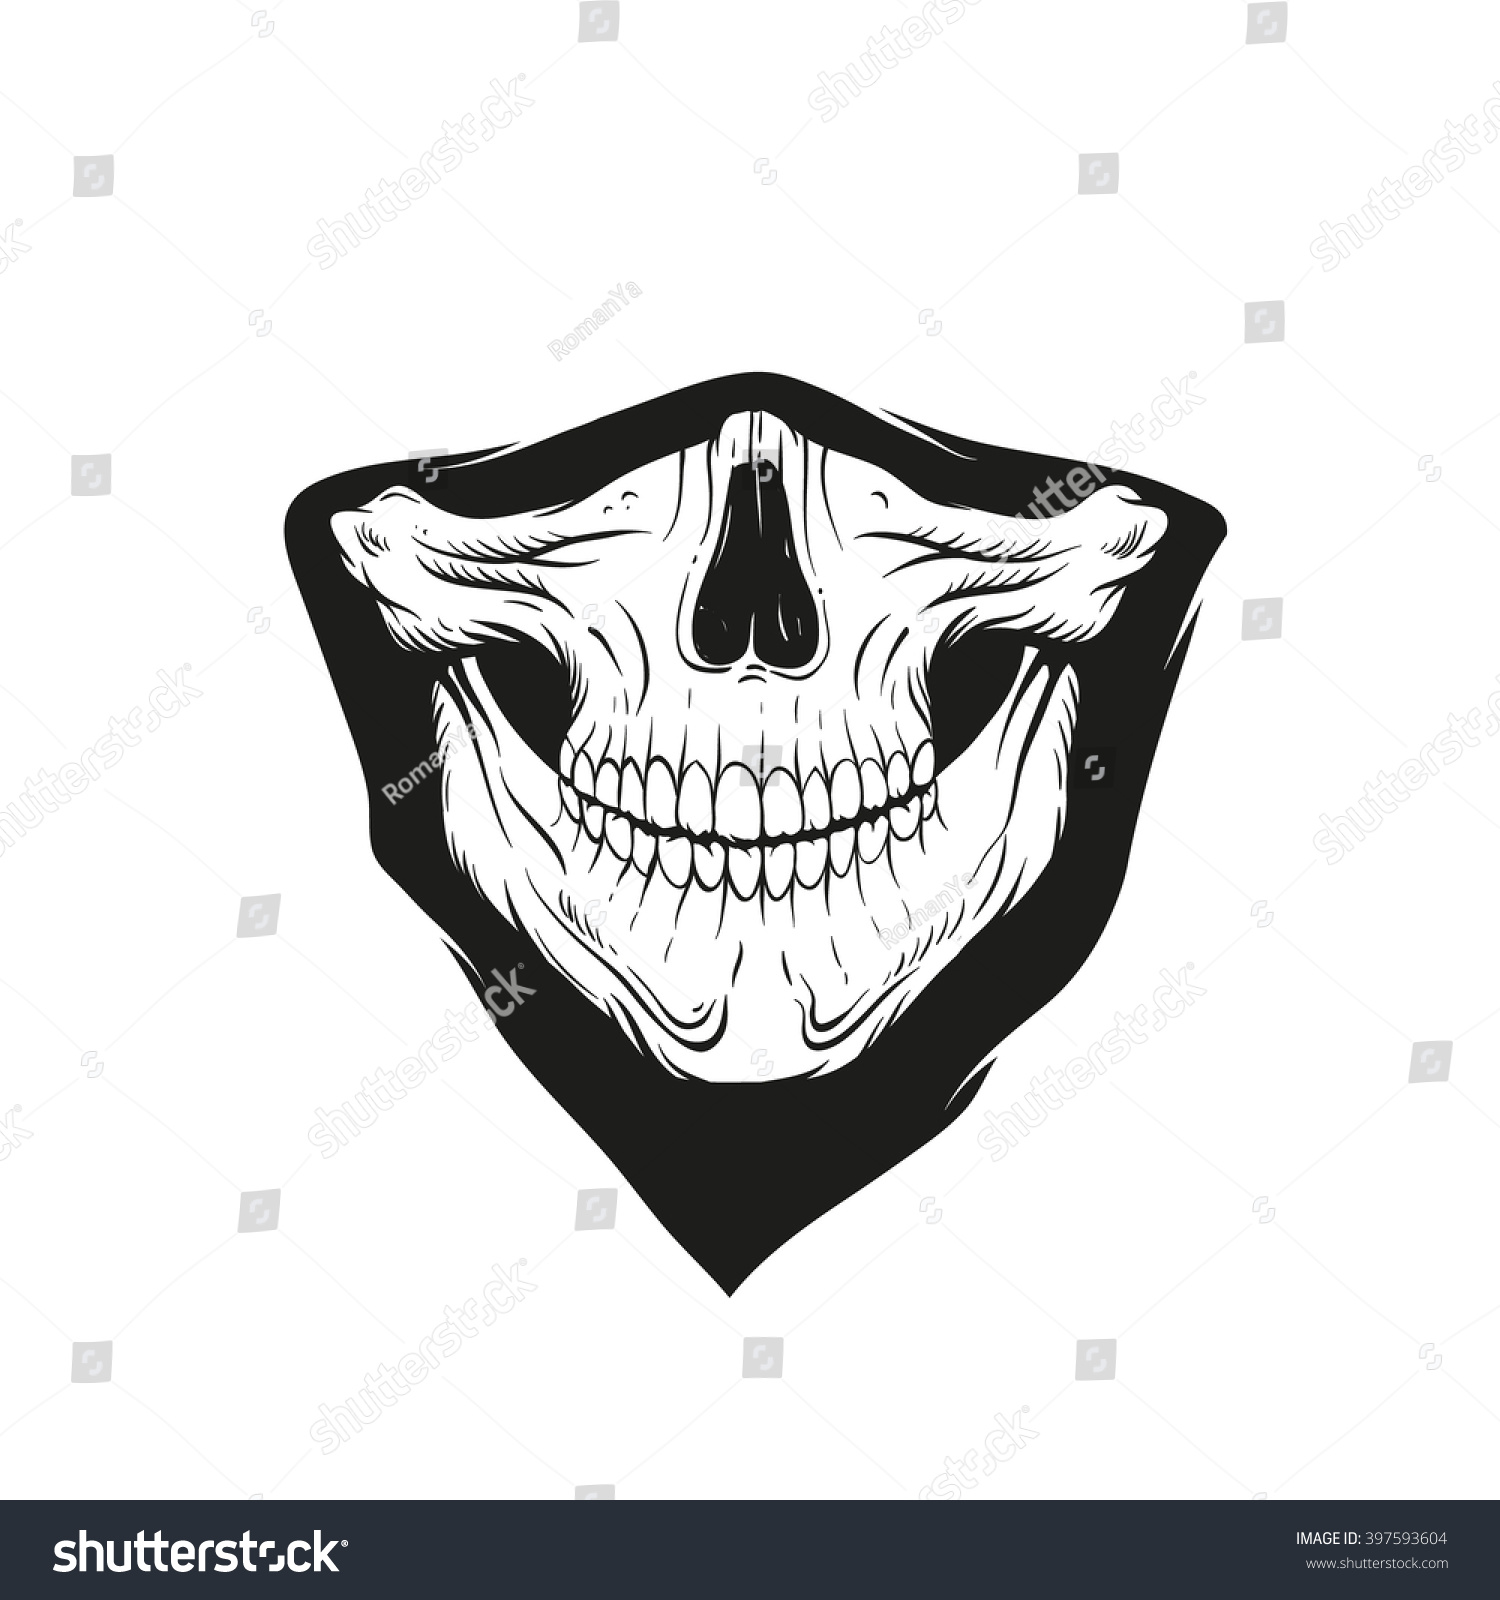 Рот скелета. Бандана череп. Бандана с челюстью скелета. Маска скелета на рот. Эскиз череп в маске.